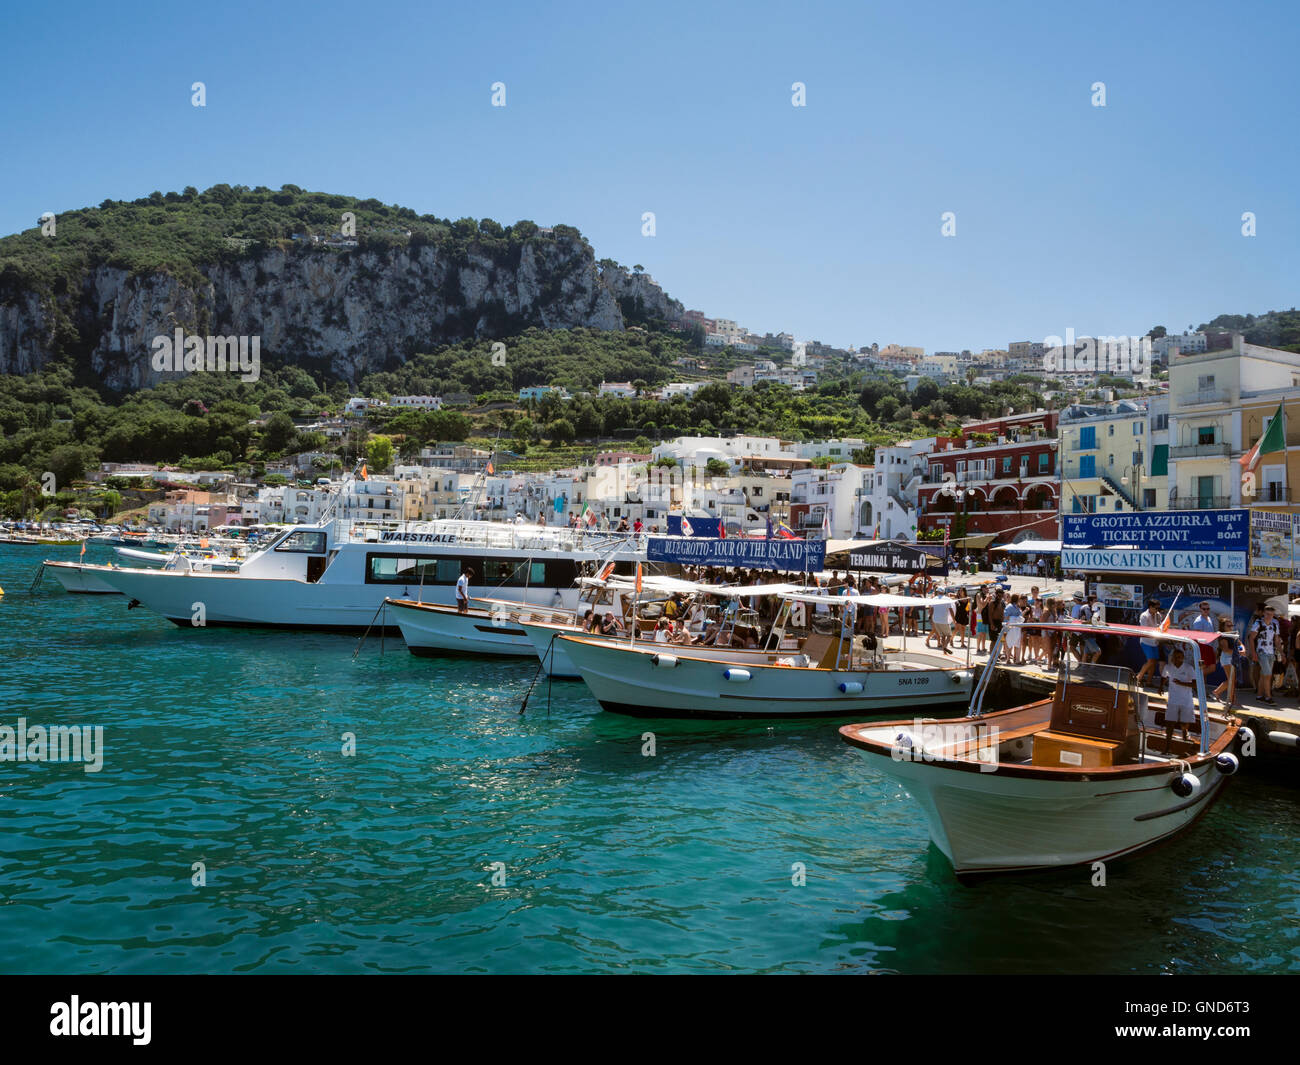 Tourist boats moored in Marina Grande at Capri, Italy Stock Photo